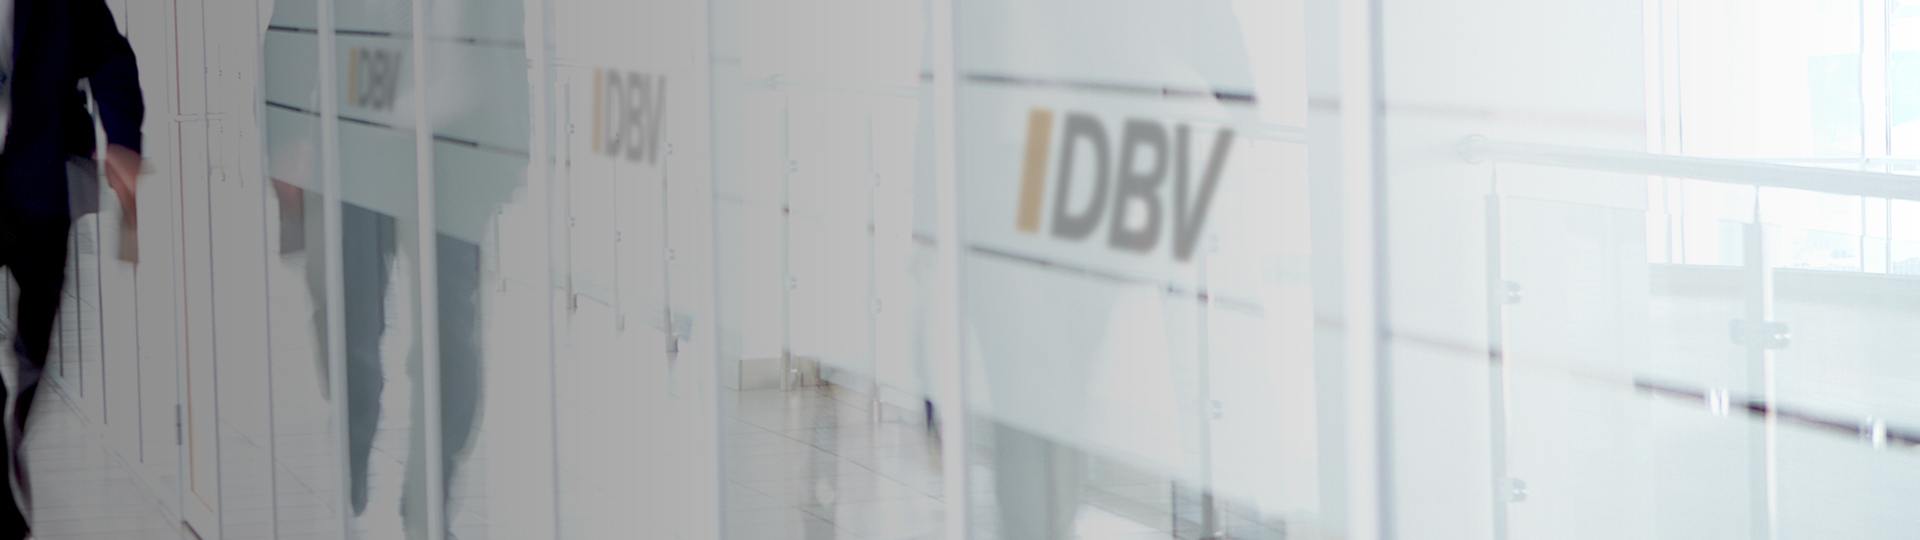 DBV Regensburg Carsten Klotz | Dienstunfähigkeitsversicherung für Beamte 